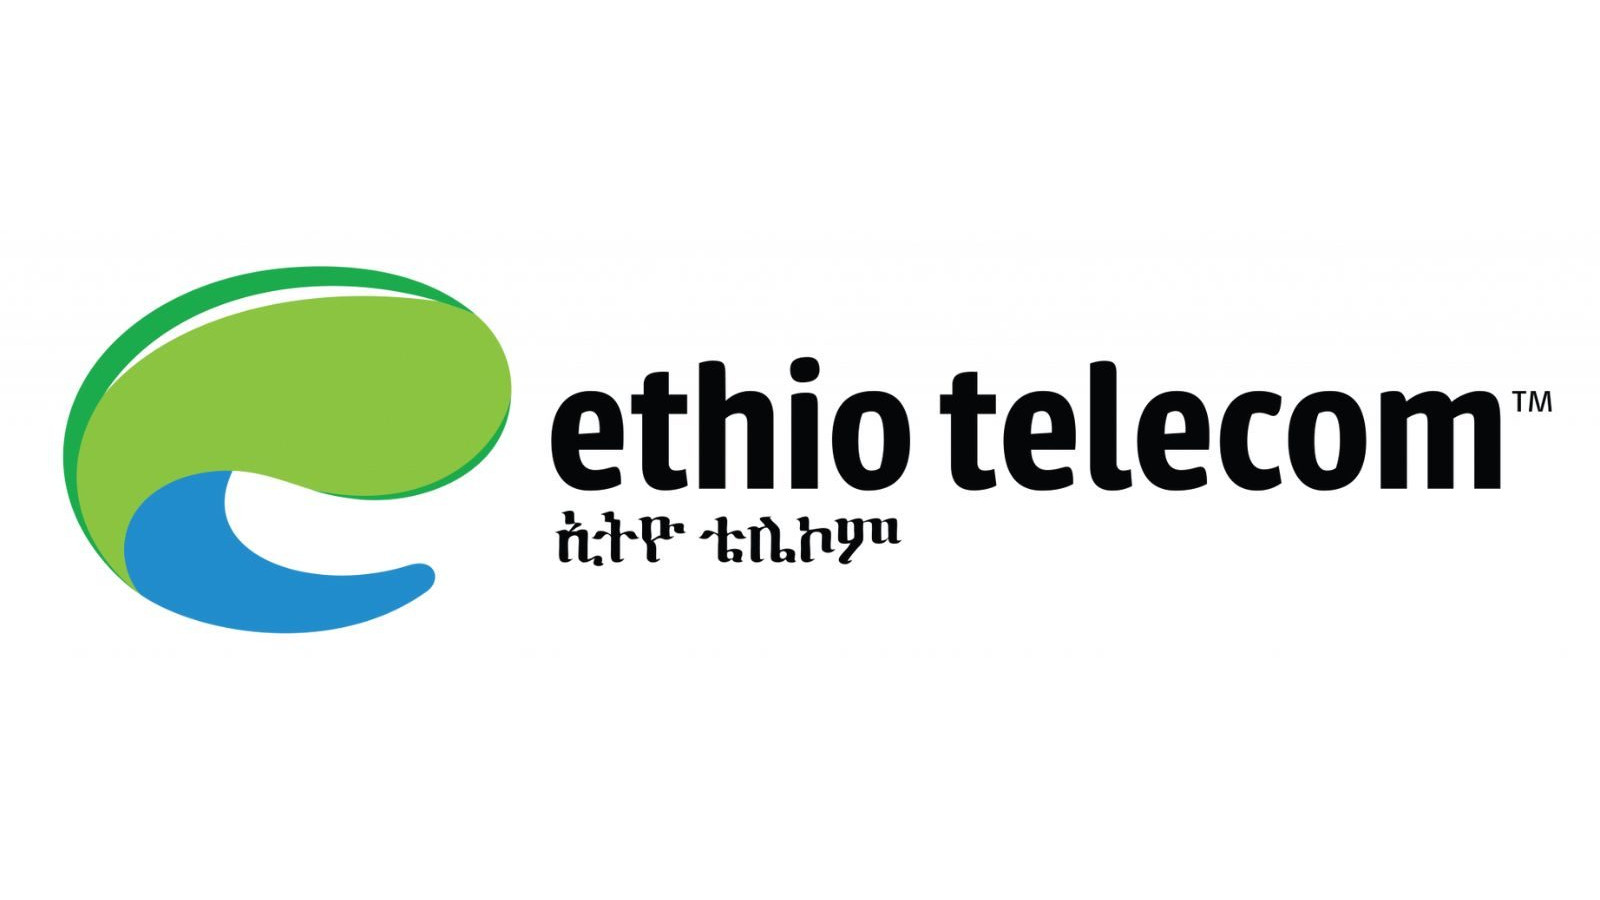 Ethiotelecom 5 ETB Mobile Top-up ET 0.68 usd